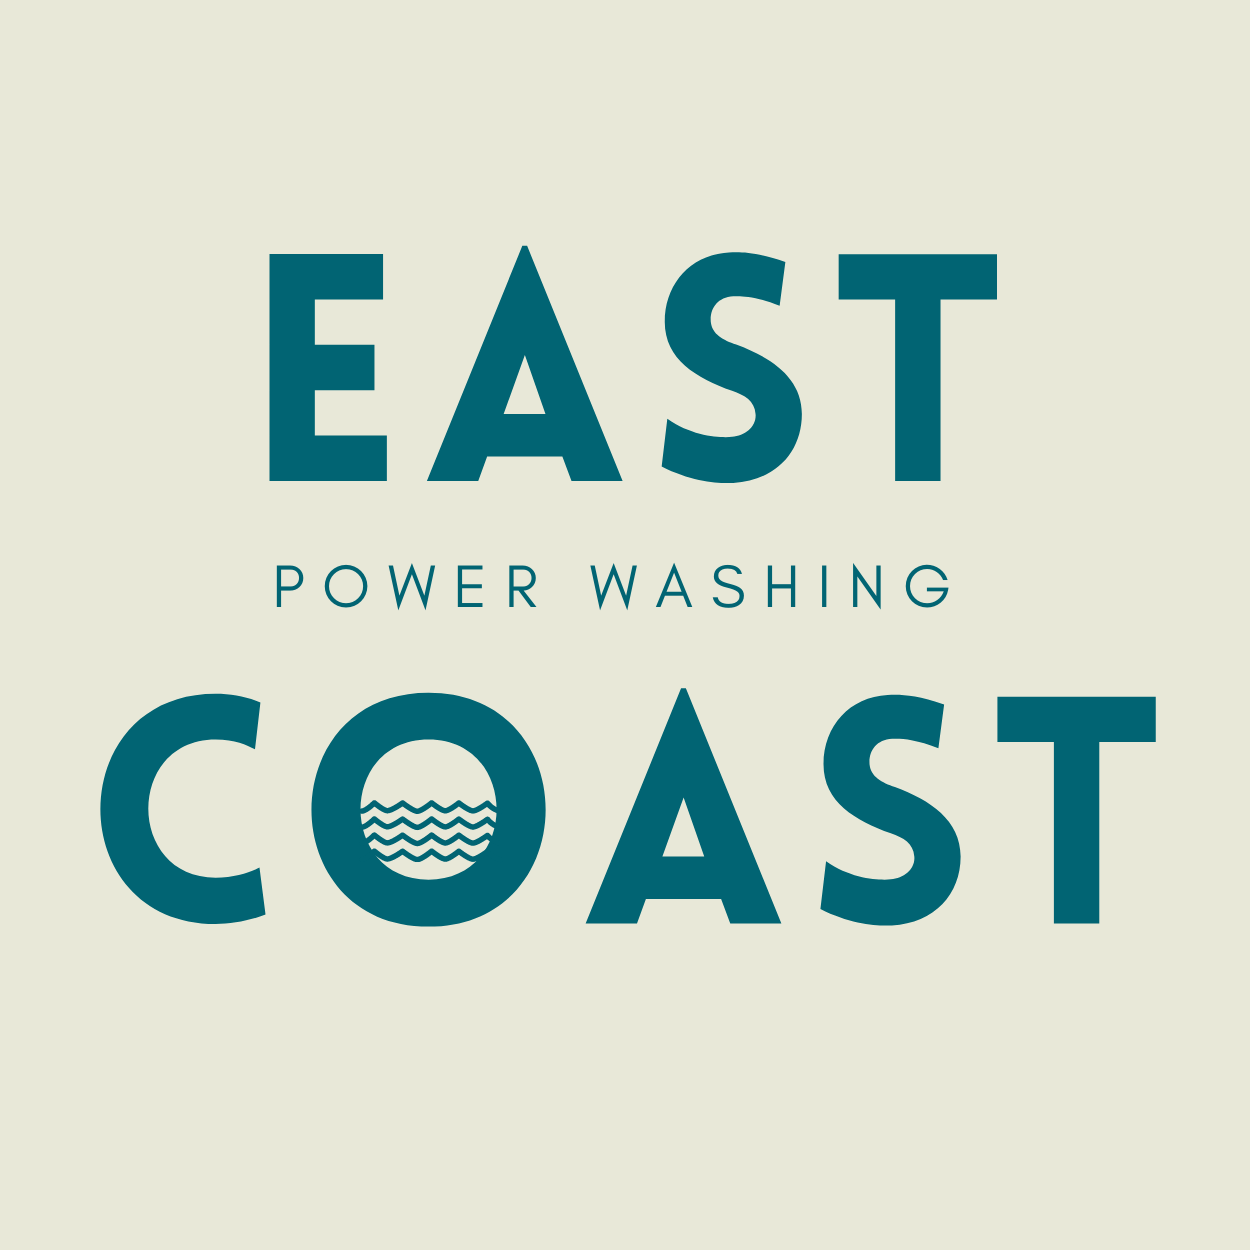 East Coast Power Washing